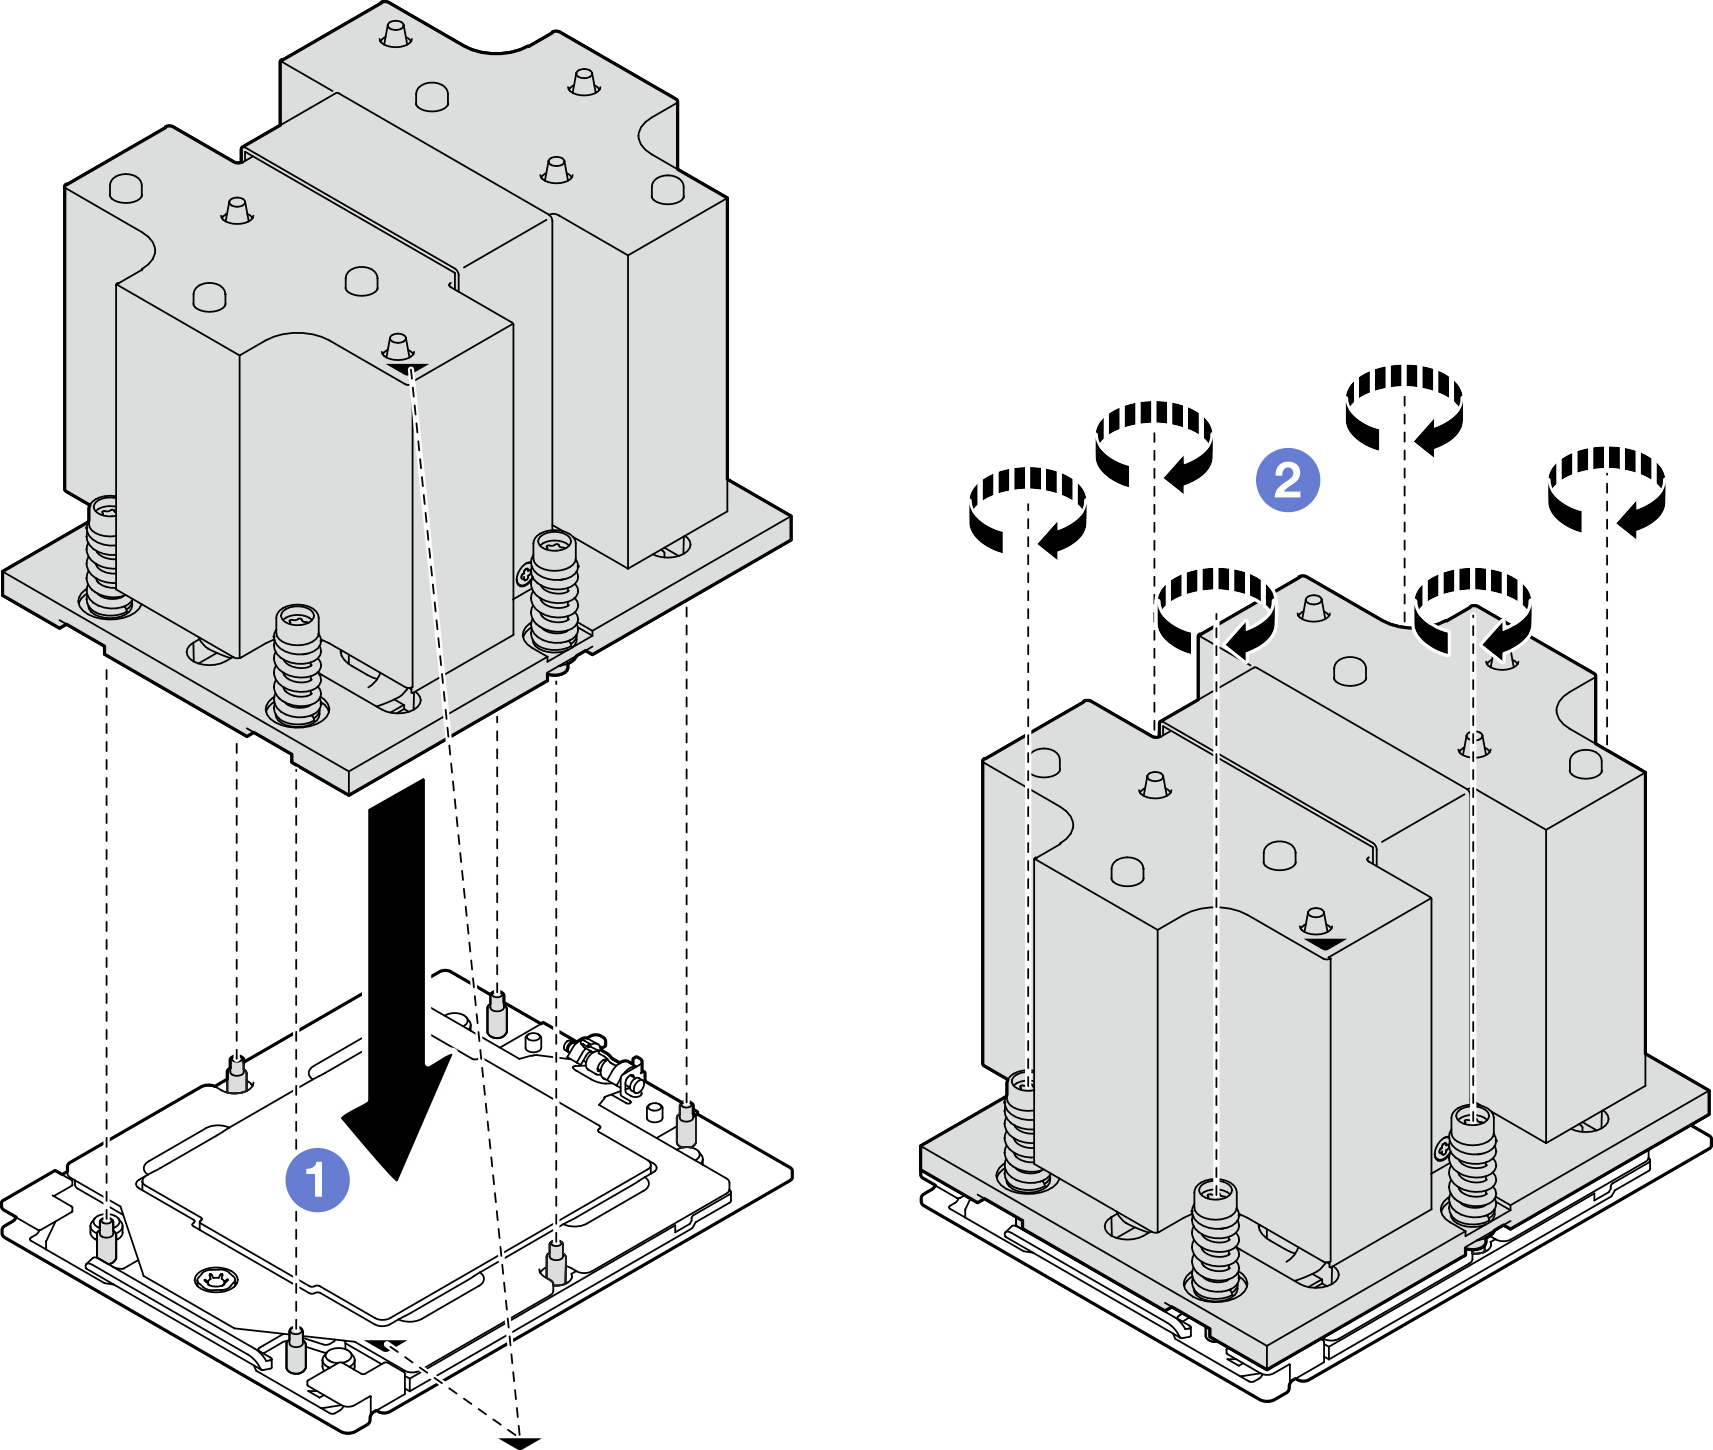 Heat sink installation